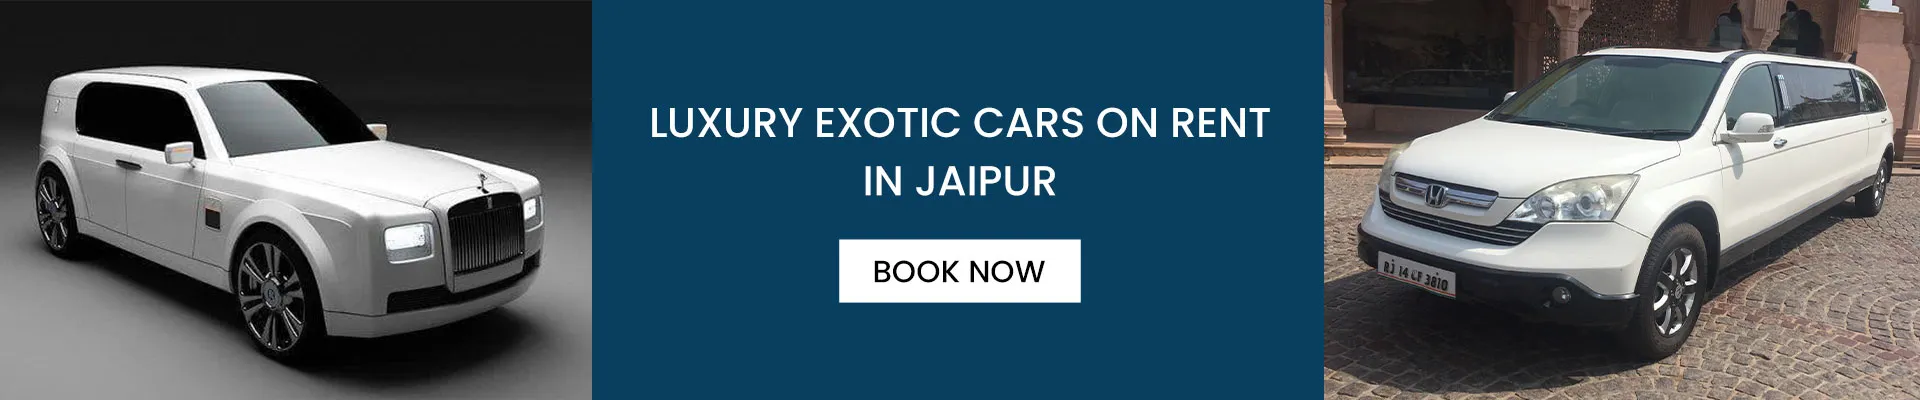 Rent Exotic Cars in Jaipur